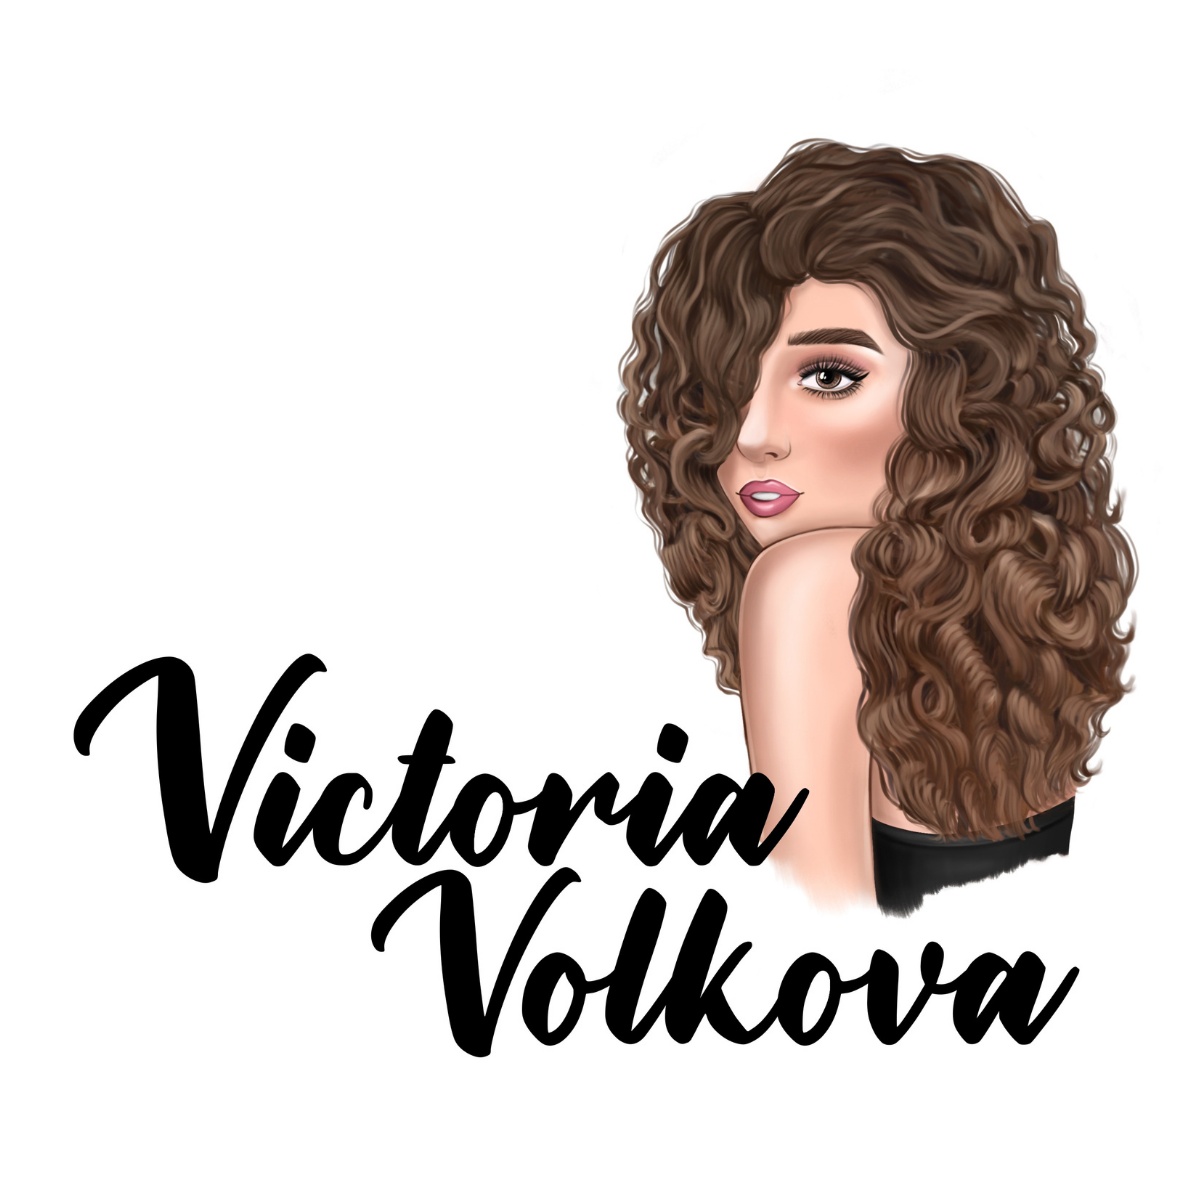 Victoria Volkova